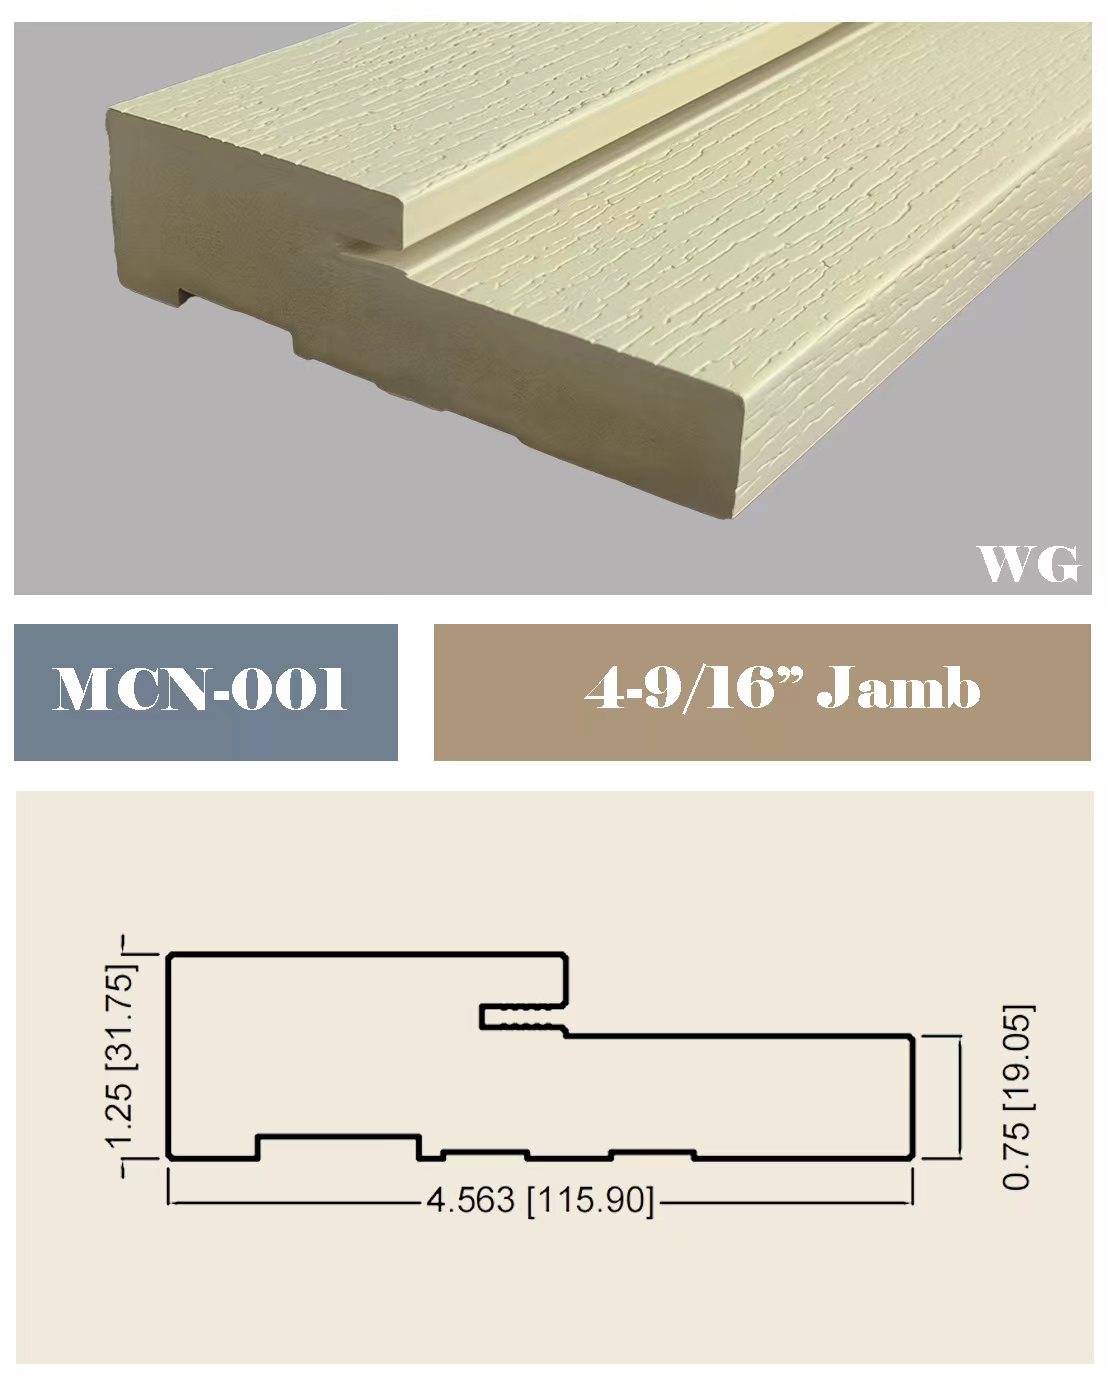 Hiina puidust valmistatud PVC WPC ukseraamide tootmine FRP-uksele